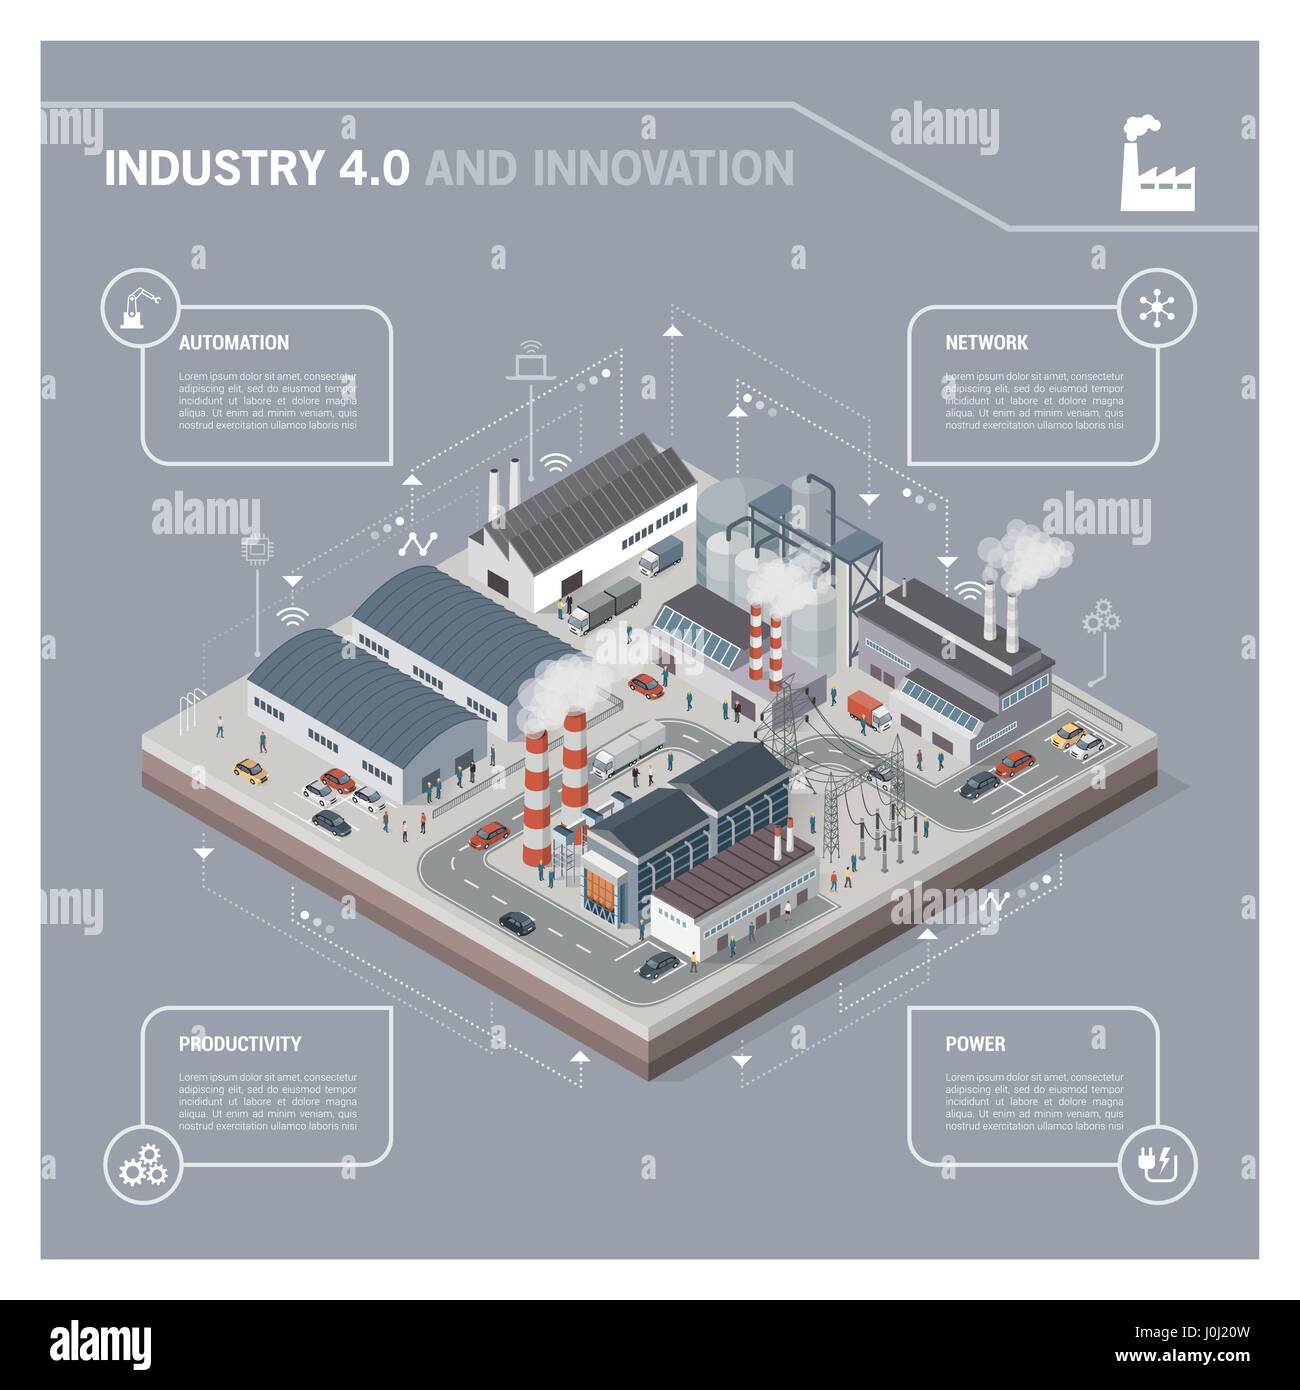 Parc industriel contemporain isométrique avec les usines, une centrale électrique, des travailleurs et des transports : l'industrie 4.0 infographie Illustration de Vecteur